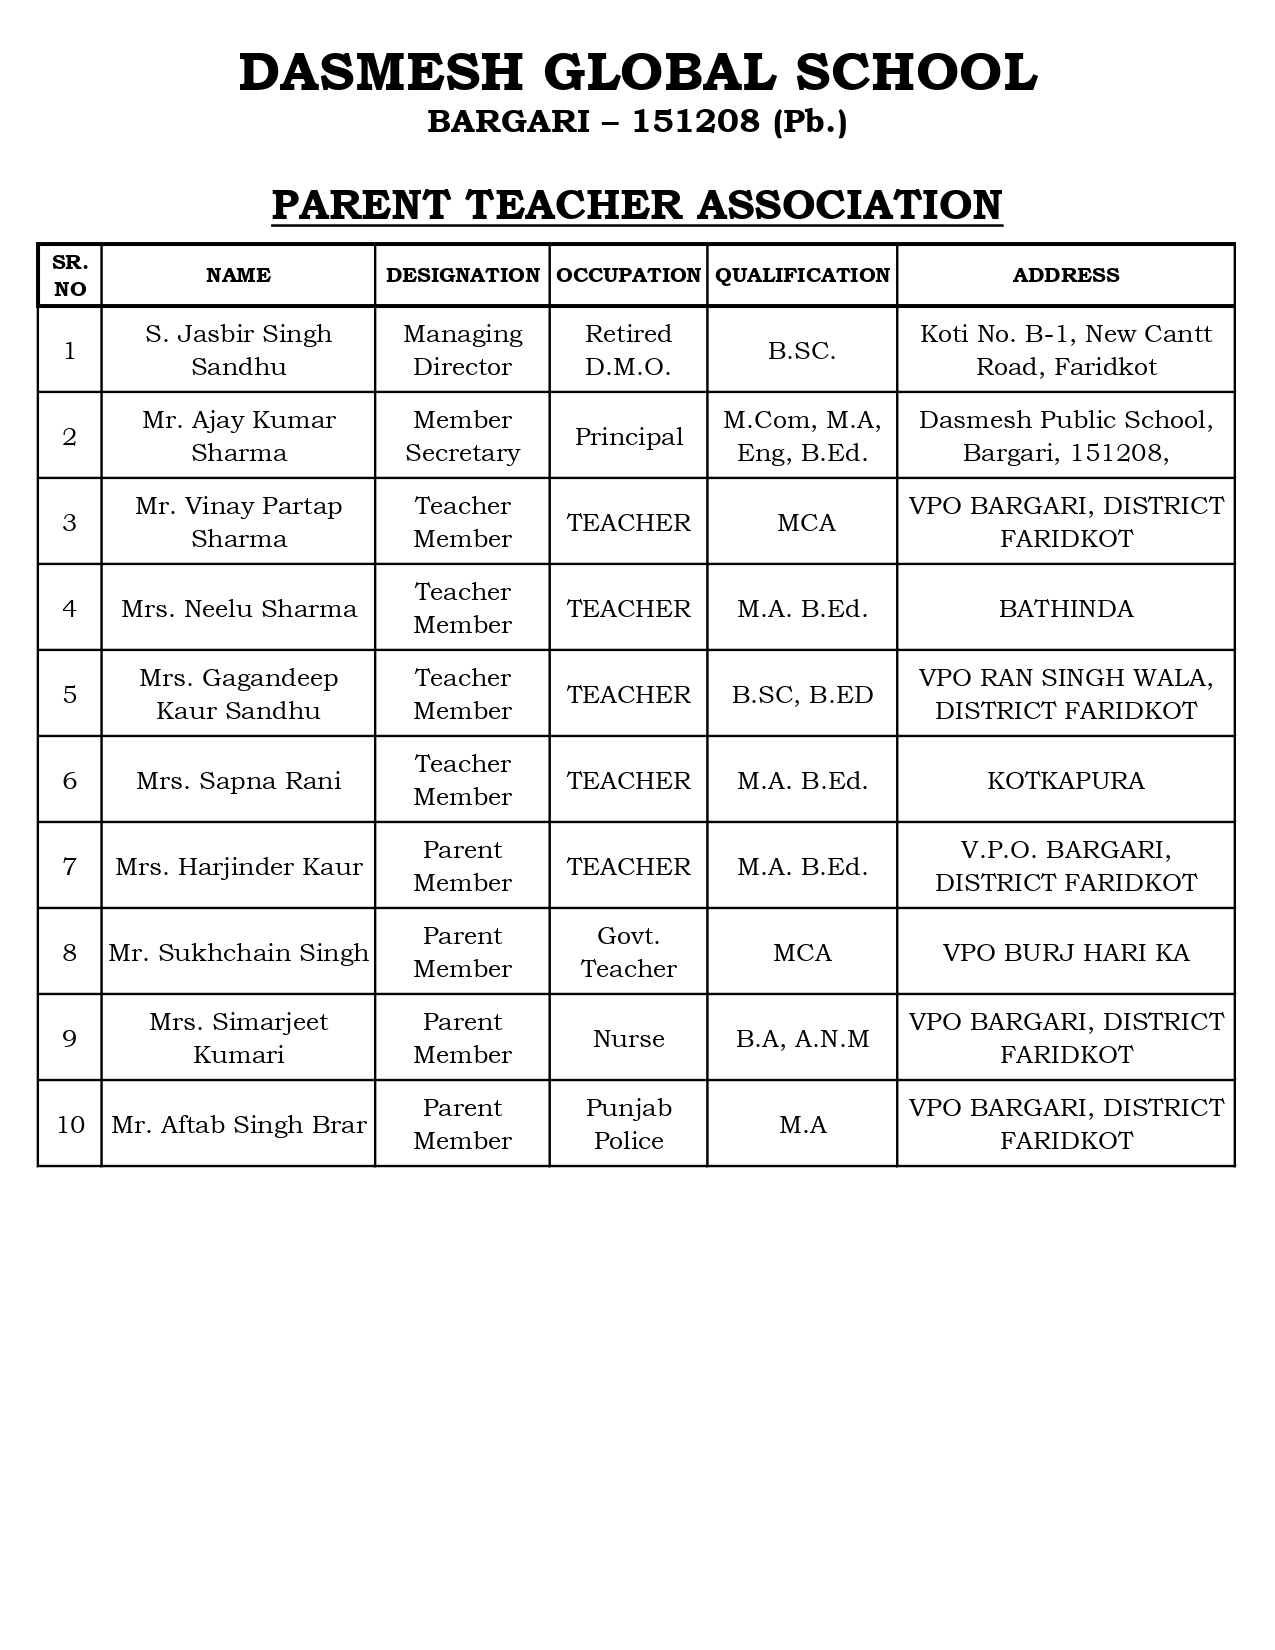 PARENT TEACHER ASSOCIATION_page-0001